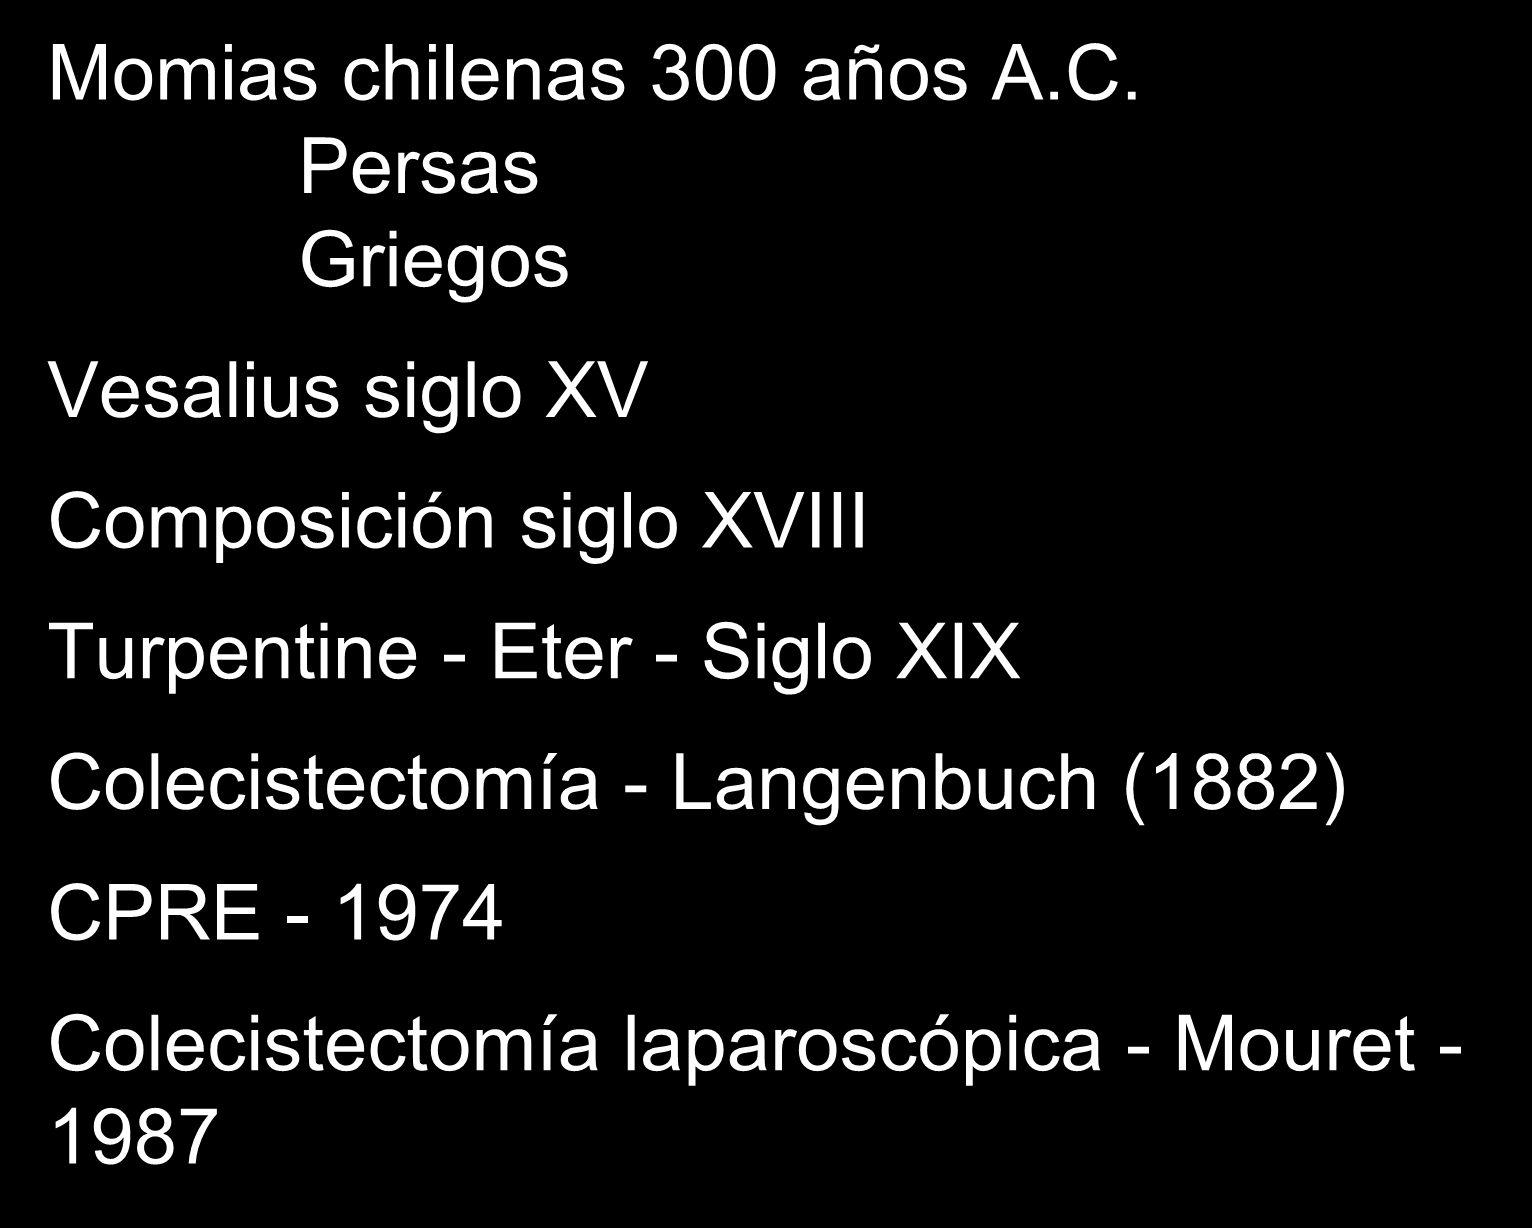 HISTORIA Momias chilenas 300 años A.C.